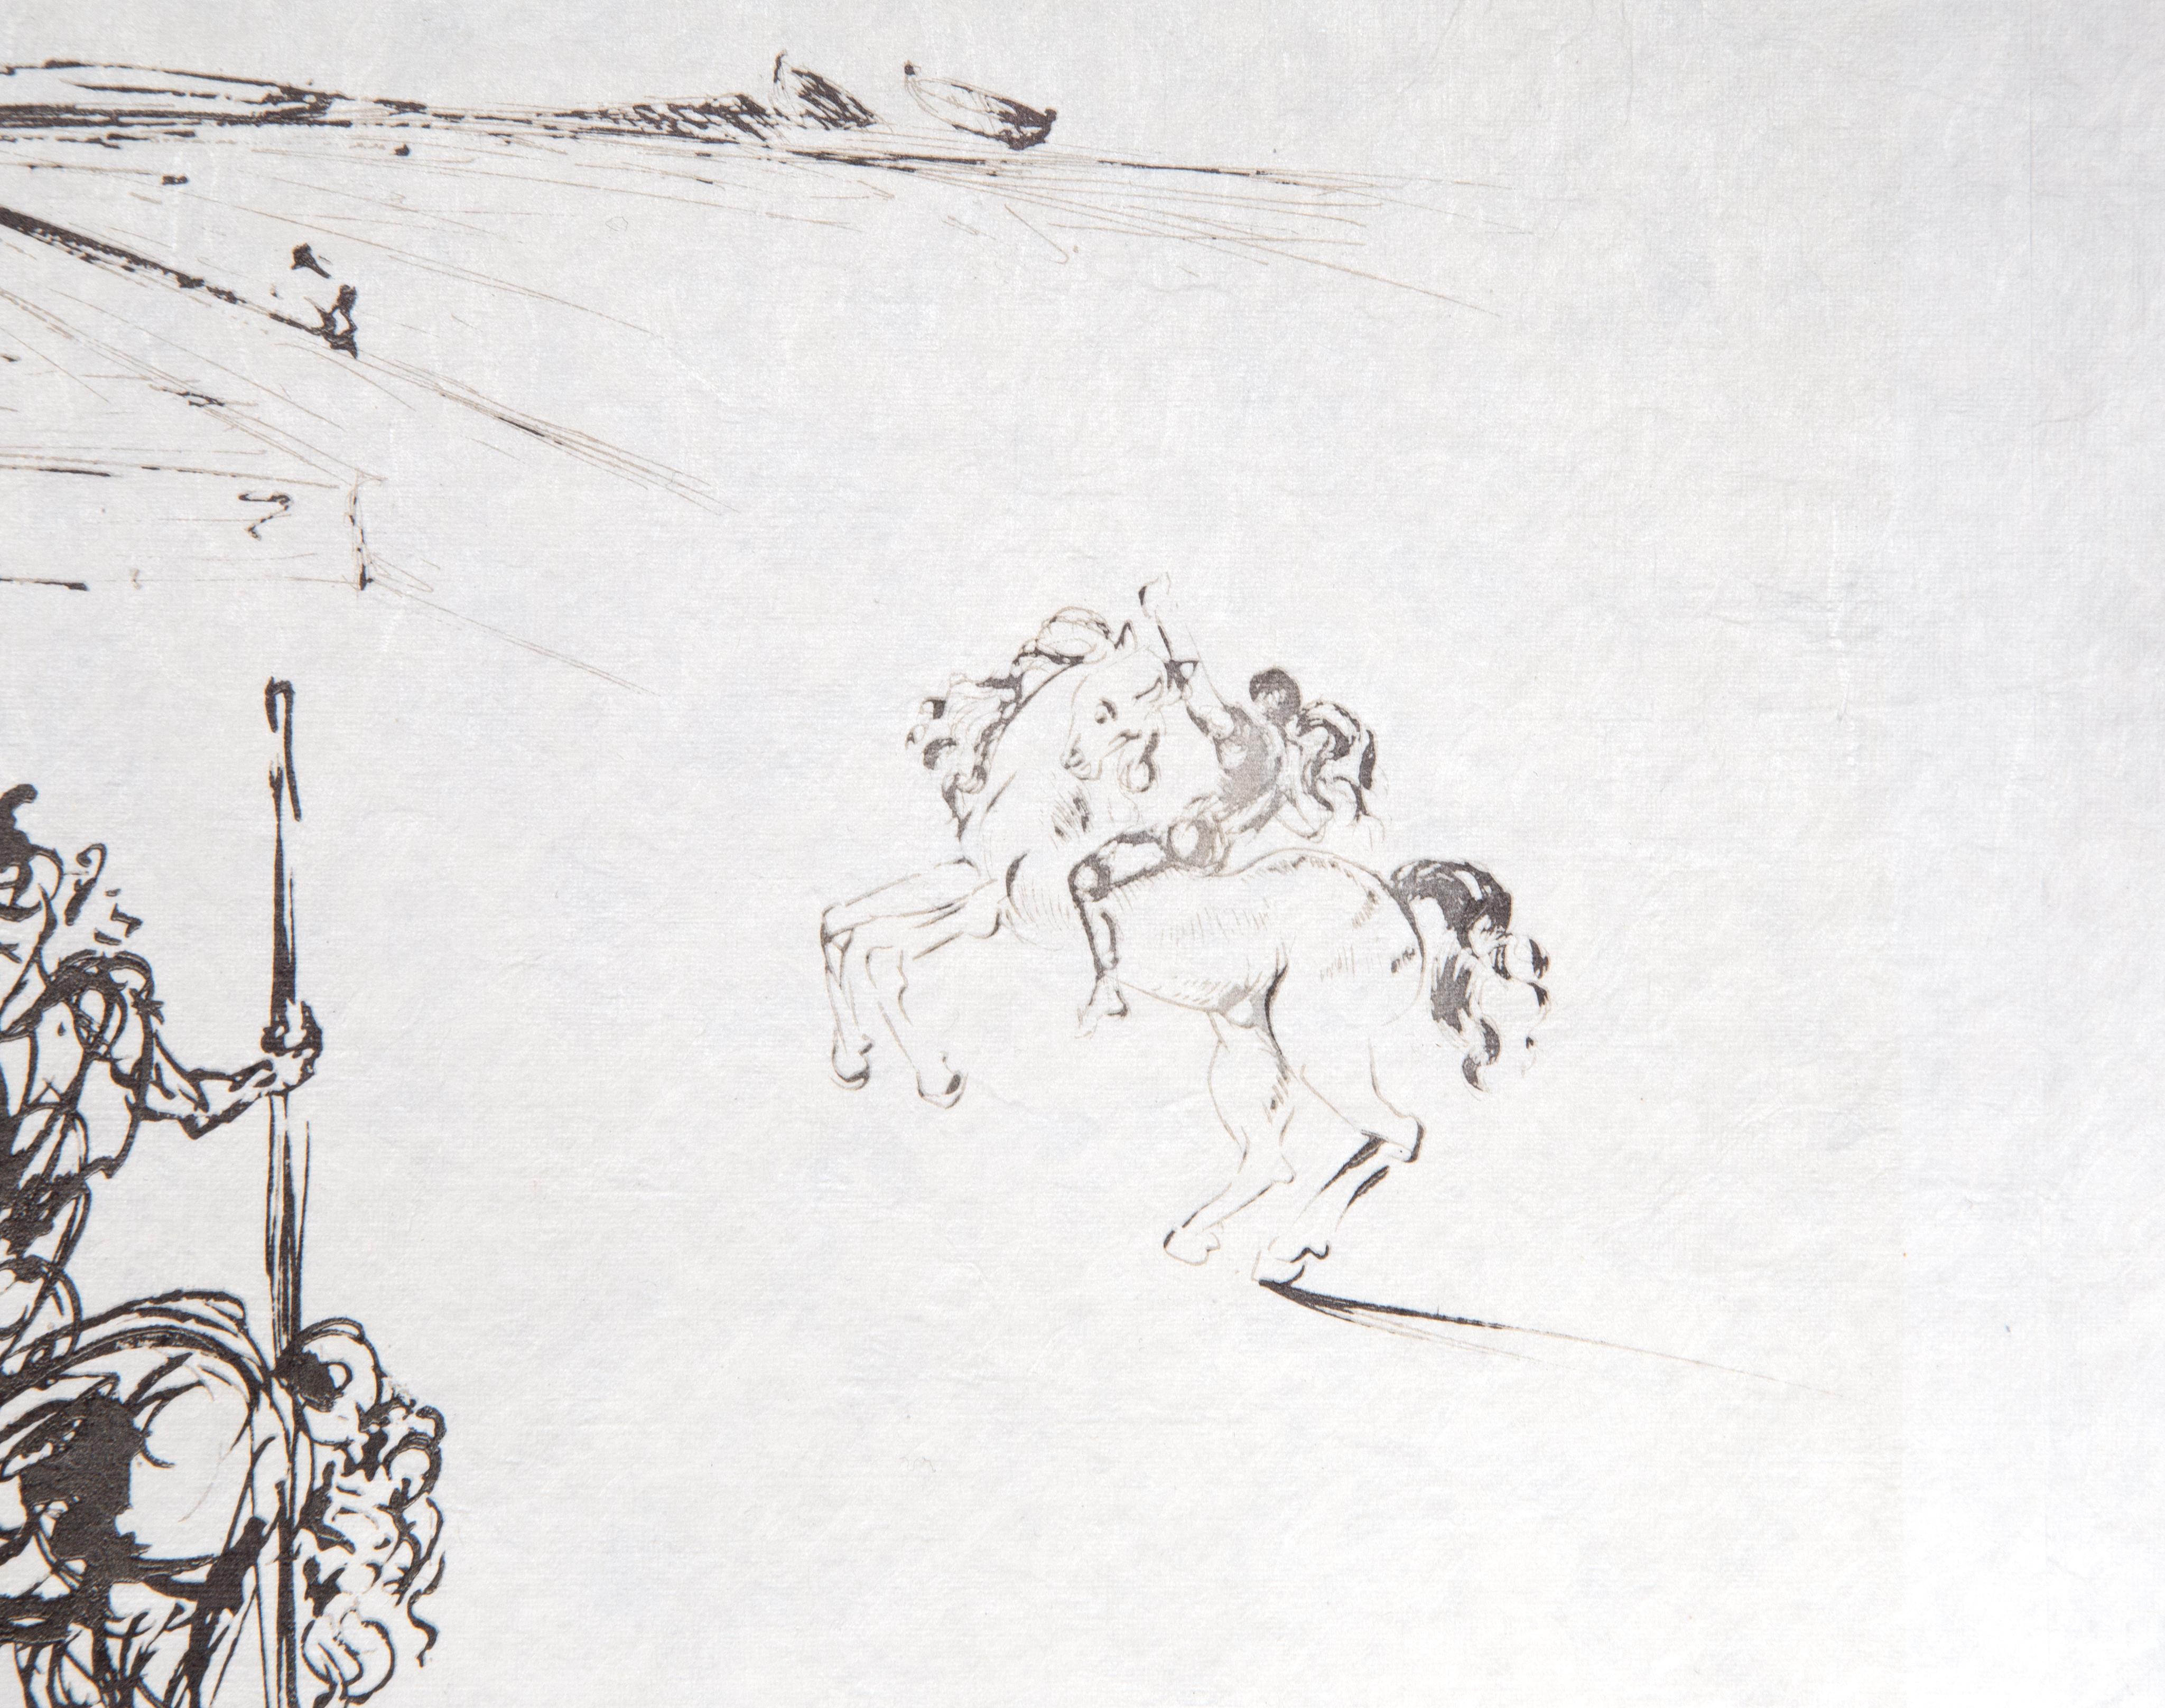 Une gravure typographique de Salvador Dali sur papier Japon, réalisée en 1973. Numérotée 7/250, cette pièce a été publiée par EGI et référencée dans Field comme 73-21.

Route vers Ampurdam (Rome et Cadaques)
Salvador Dali, Espagnol